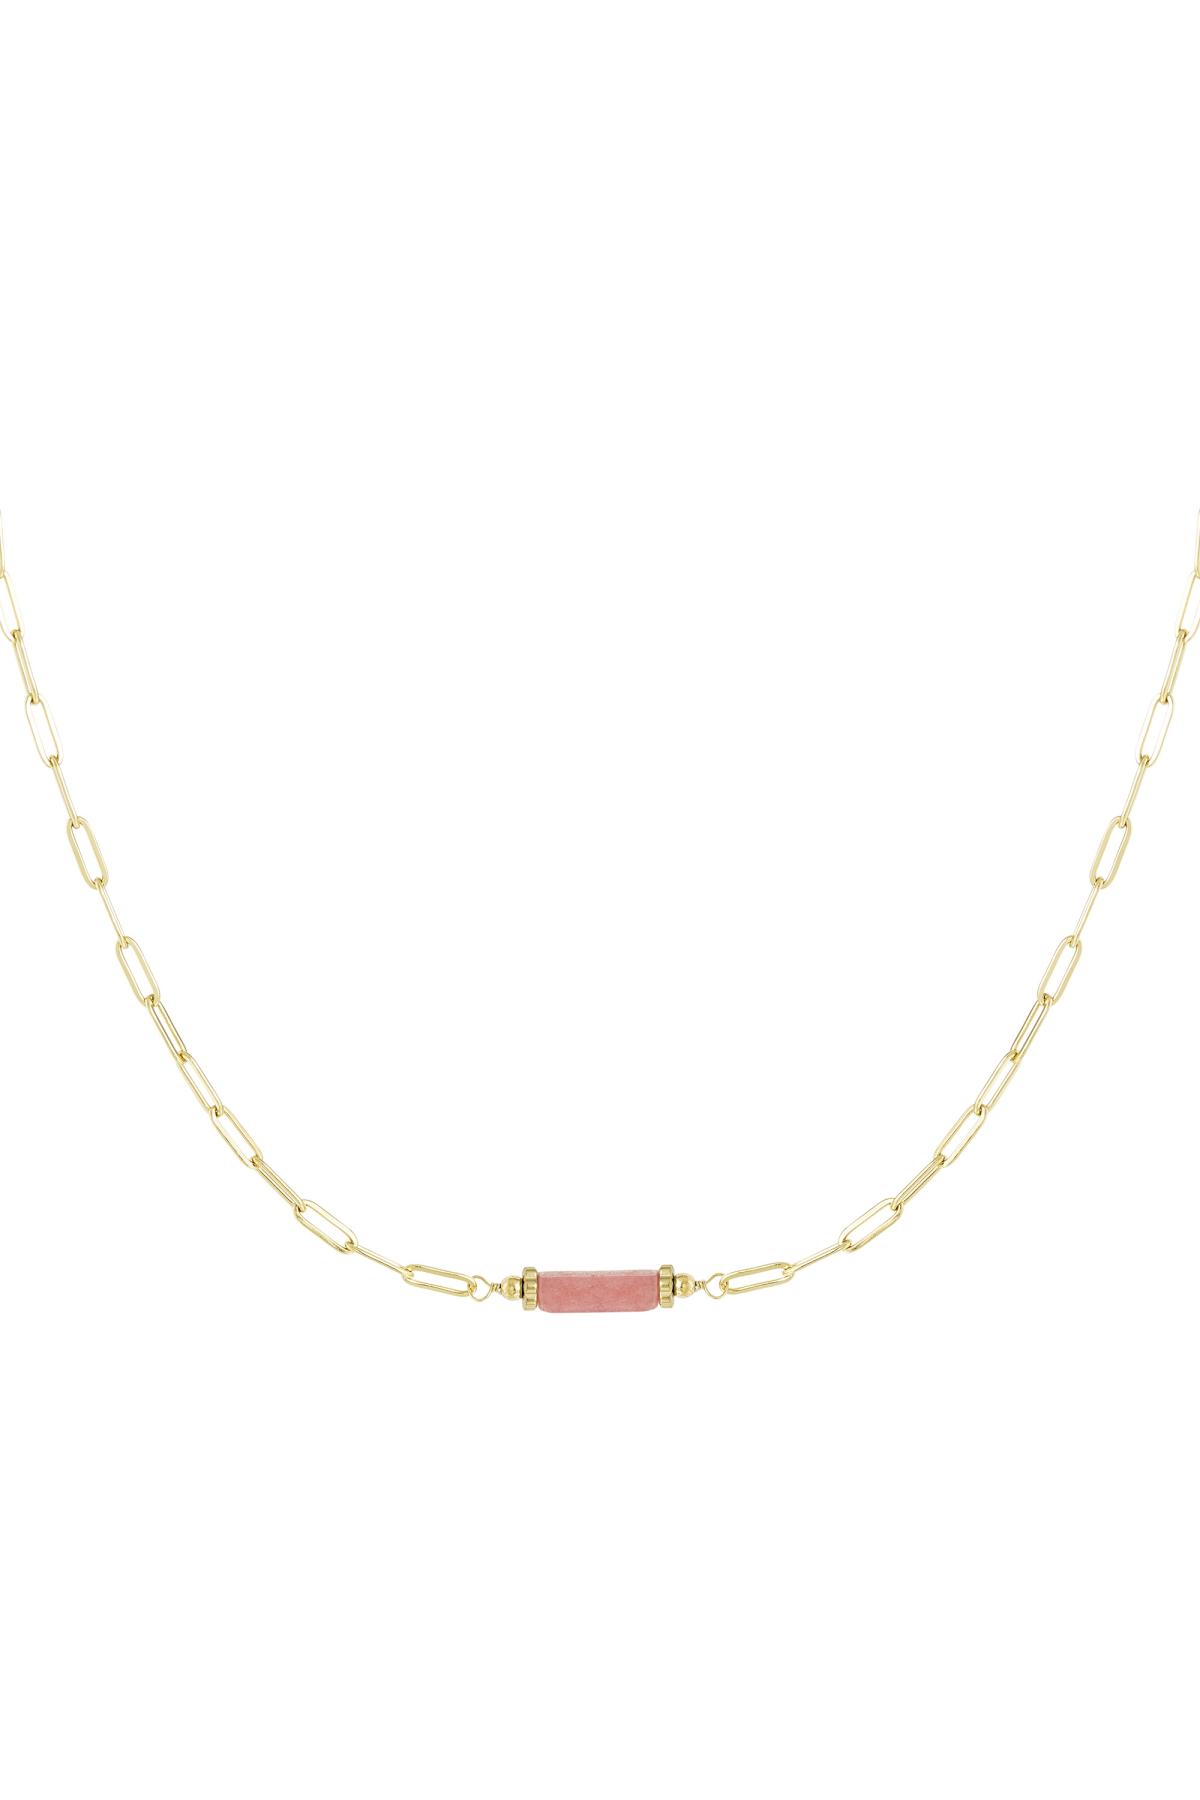 Taş uçlu baklalı zincir - Doğal taş koleksiyonu Pink & Gold Stainless Steel h5 